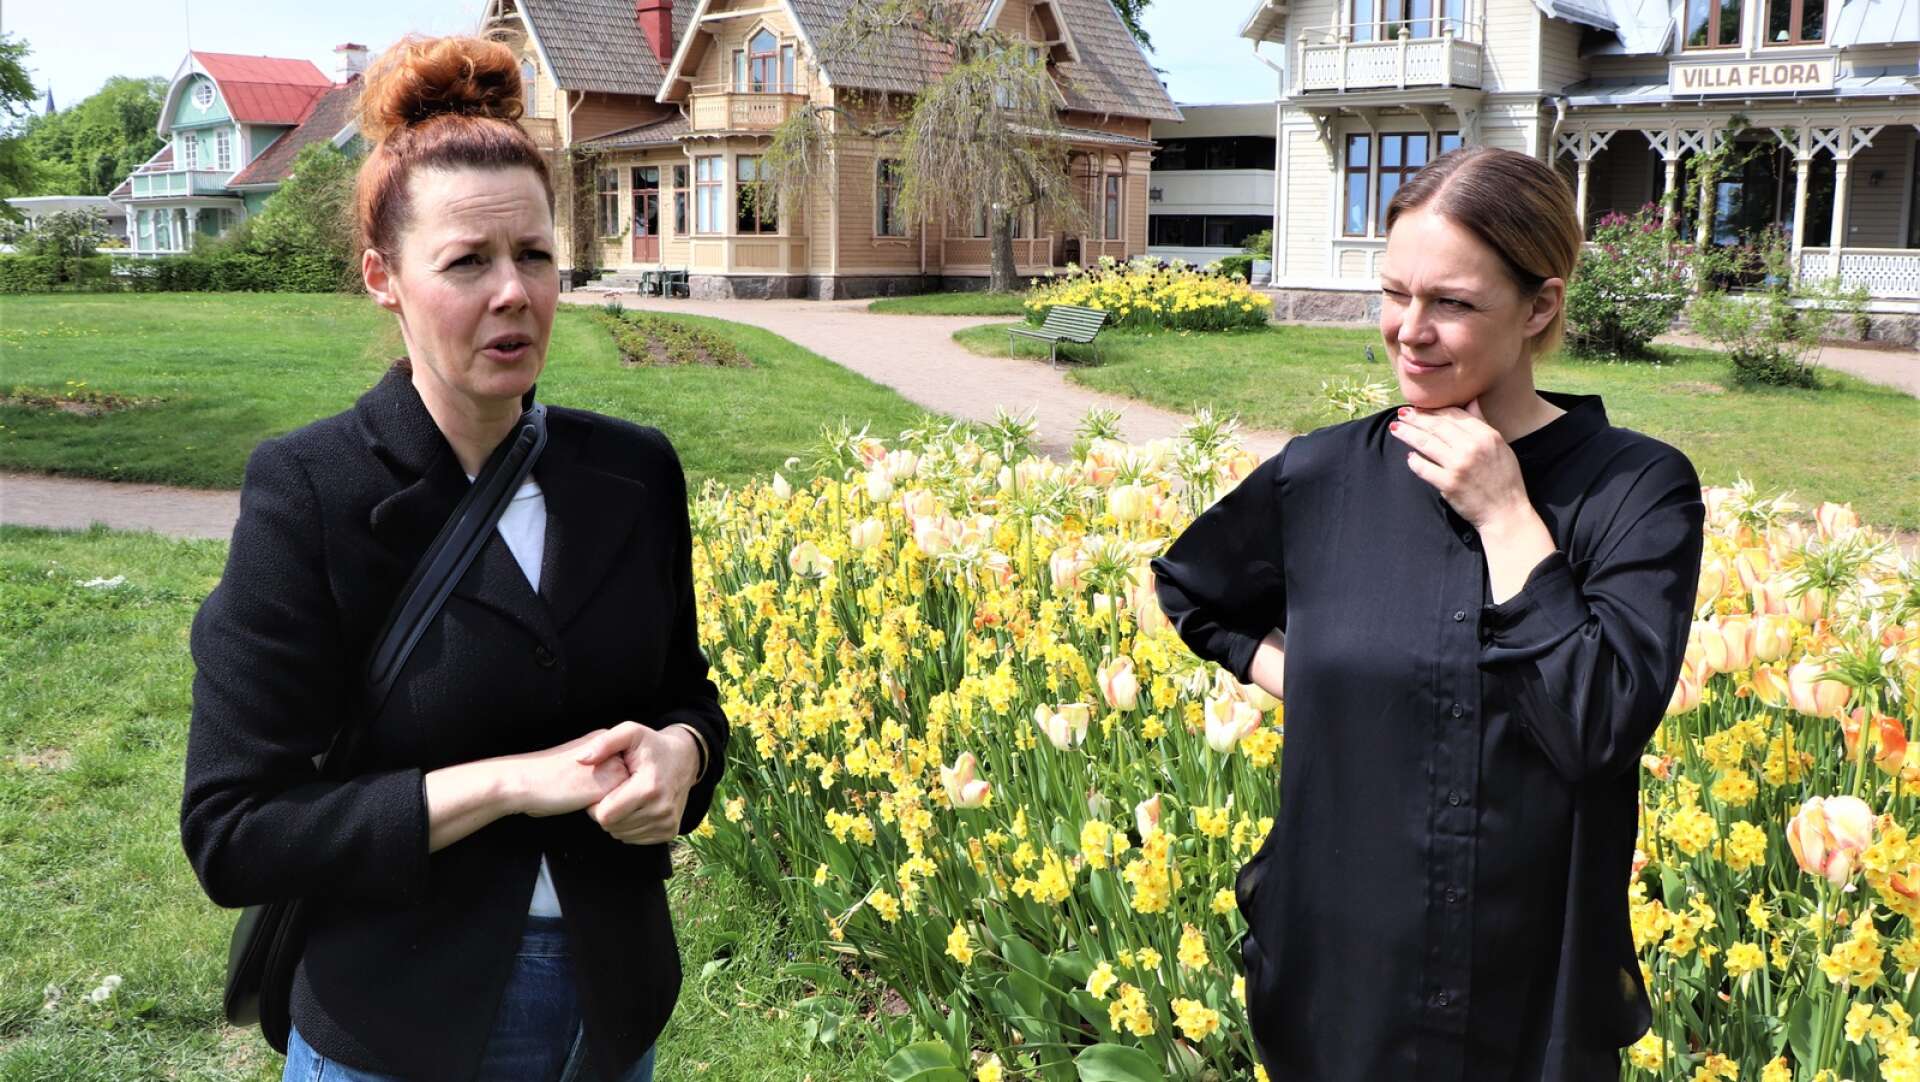 Turistsommaren i Hjo har fokus på trädgårdsturism, lokal mat och husbilsturism, berättar Lotta Persson och Rebecca Martyn, där besökarna möts av många välkända evenemang och en del nya.